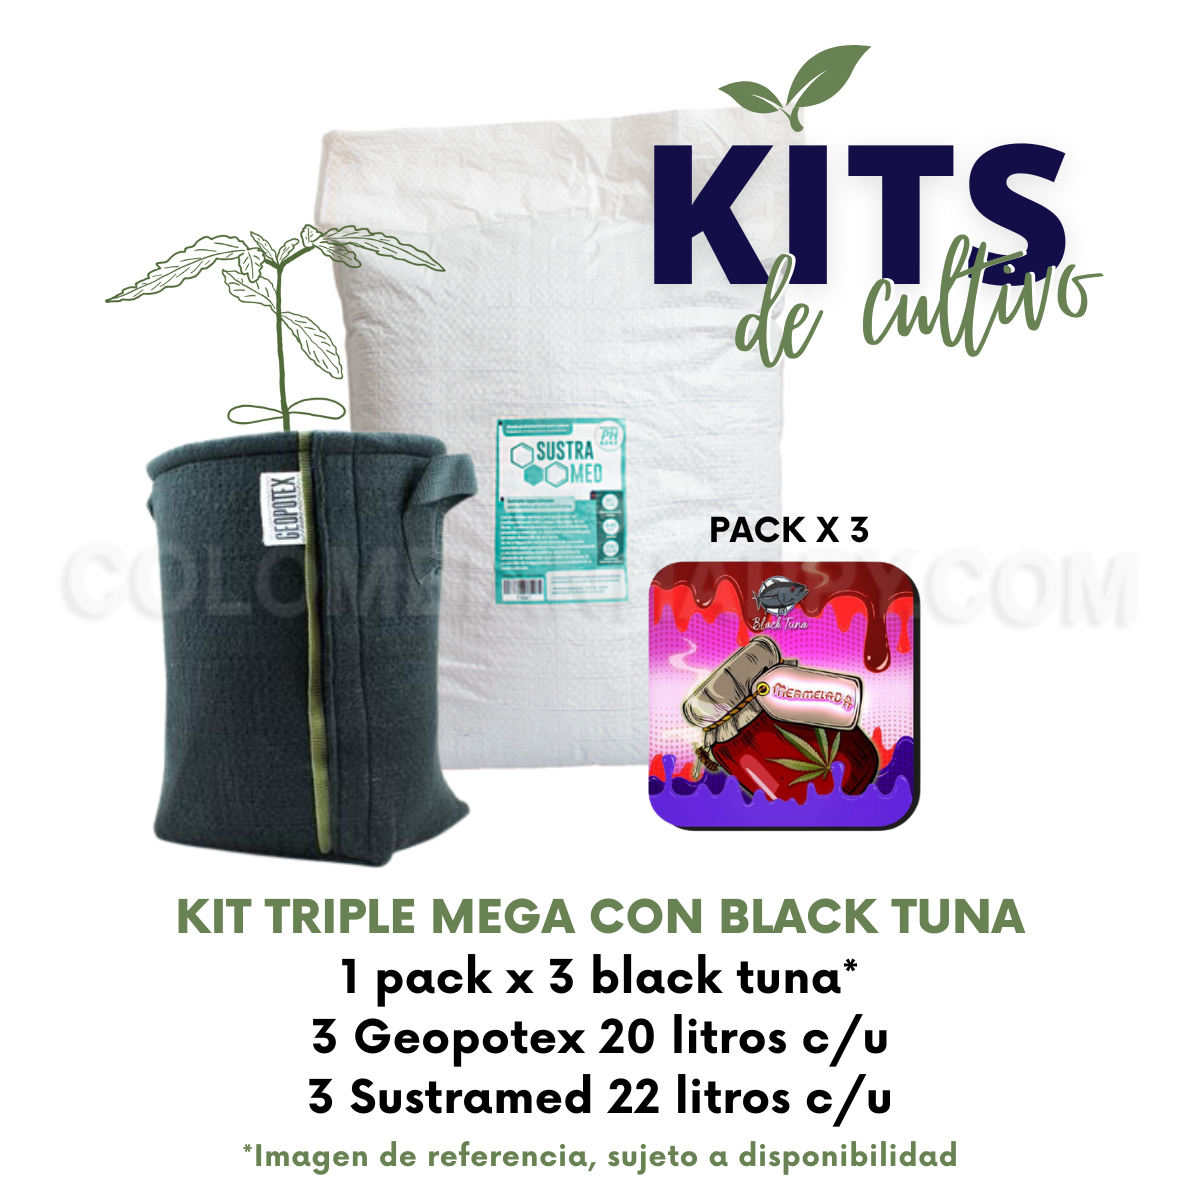 Kits de Cultivo Black Tuna